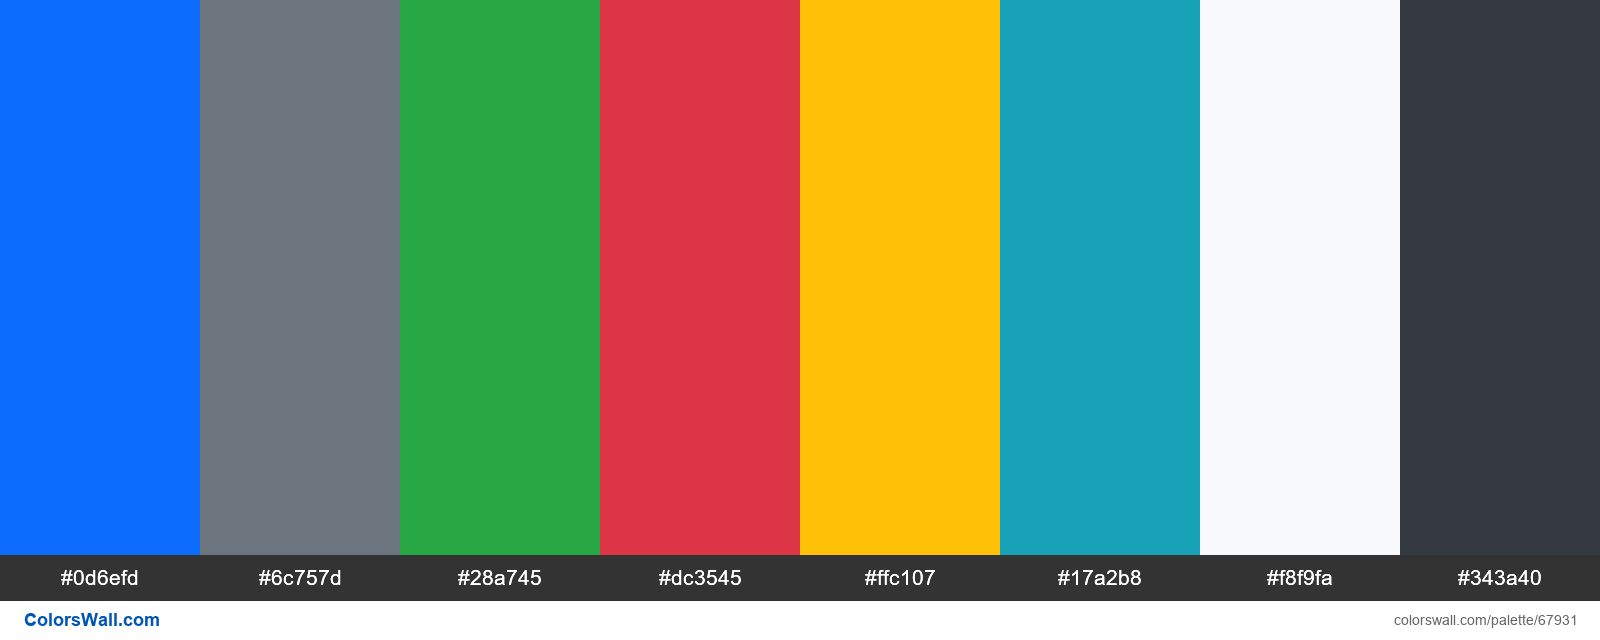 Màu sắc Bootstrap 5: Khám phá bảng màu sắc mới nhất của Bootstrap 5 và tạo ra giao diện đẹp mắt hơn bao giờ hết!